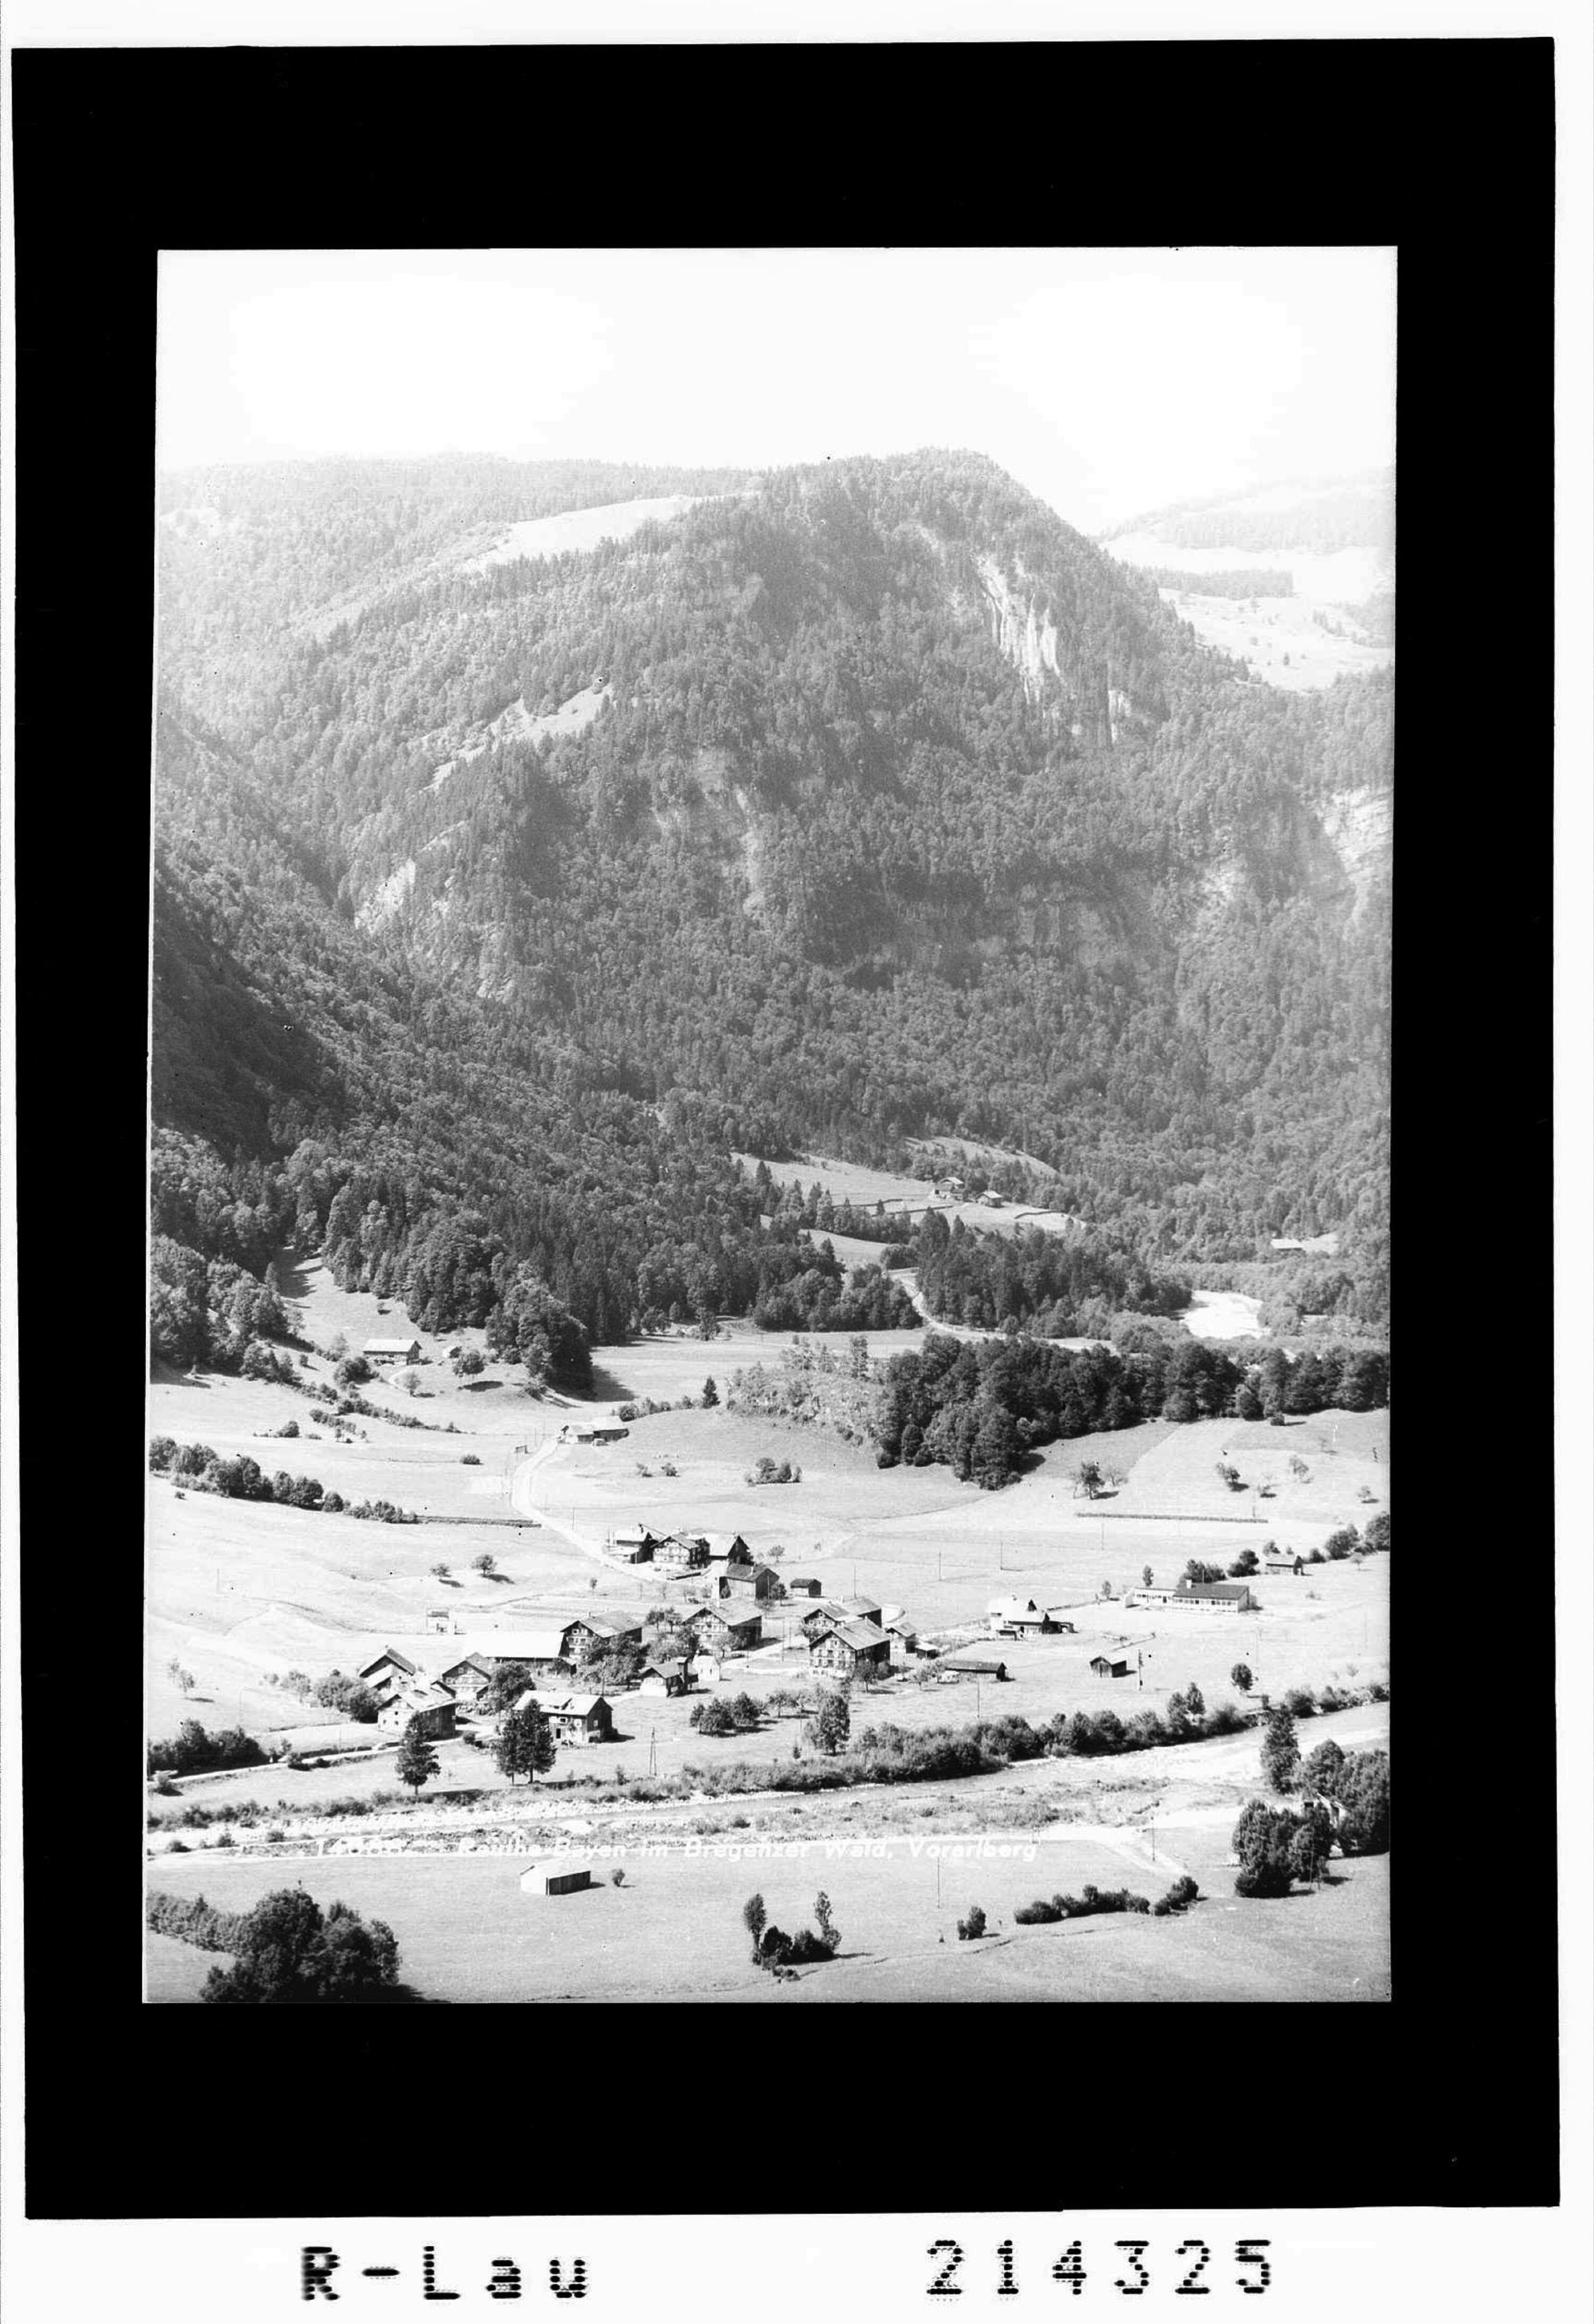 Reuthe - Bayen im Bregenzer Wald, Vorarlberg></div>


    <hr>
    <div class=